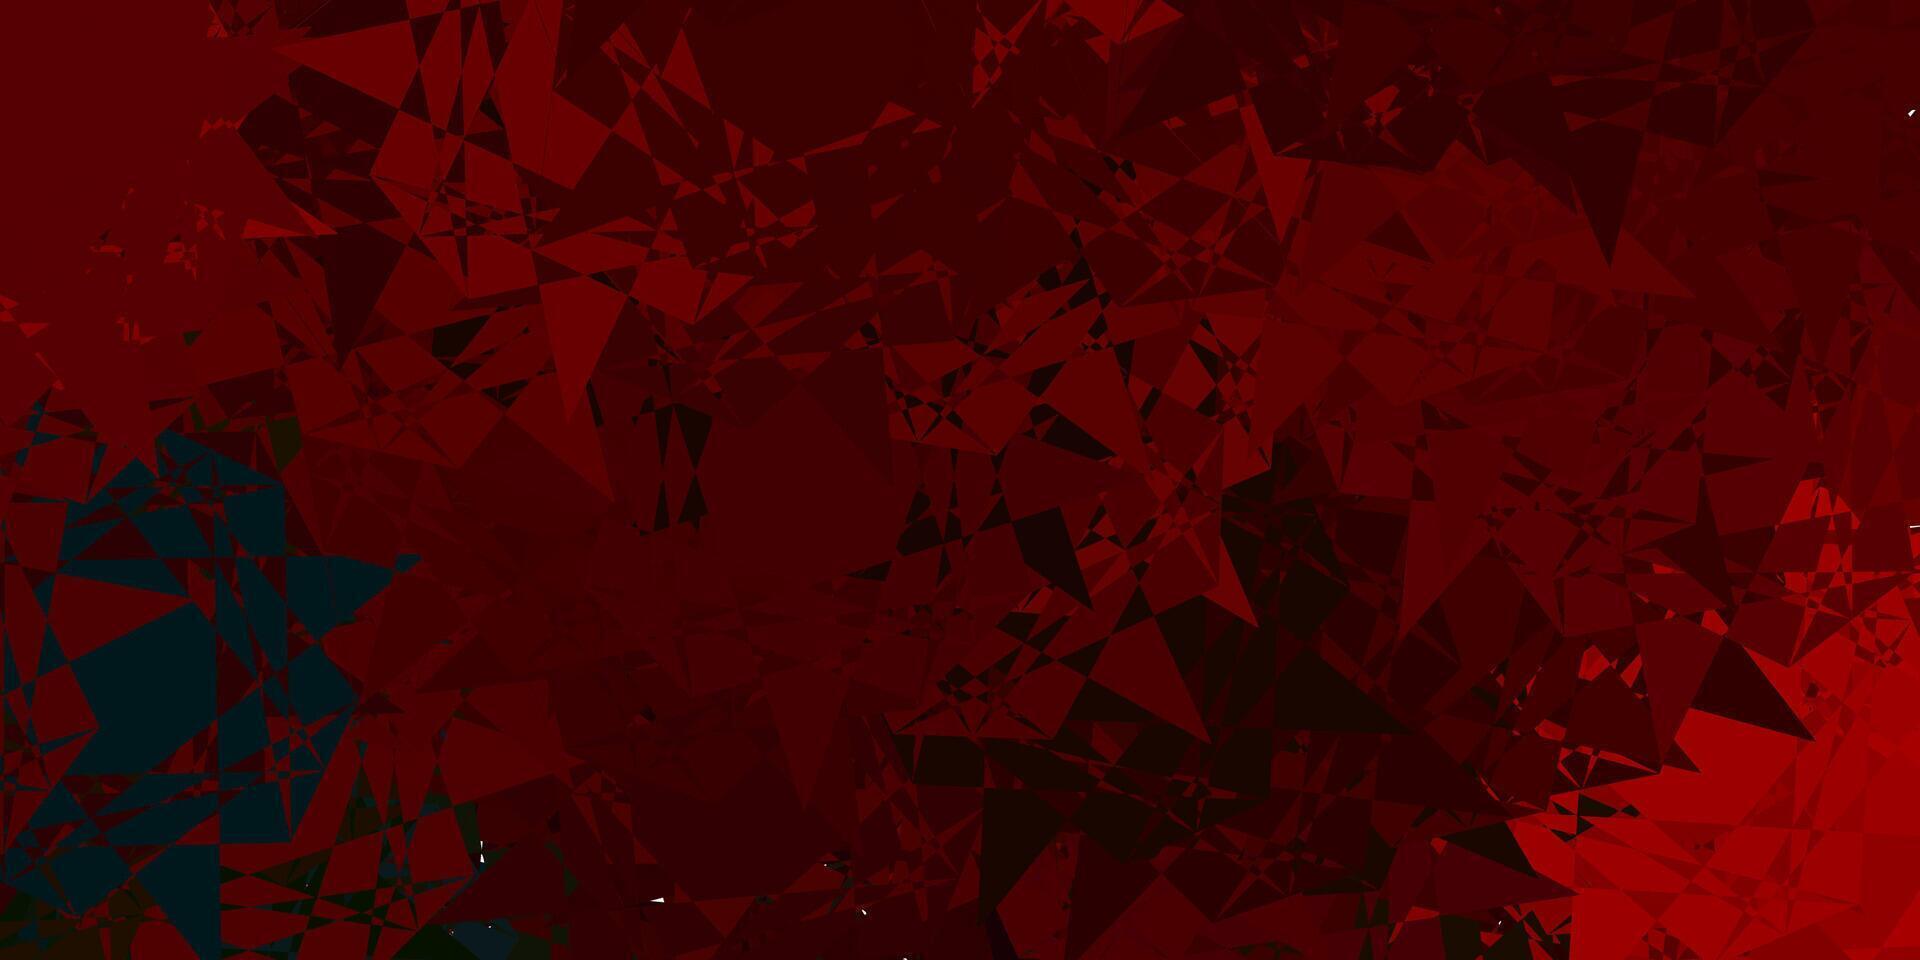 donkergroen, rood vector sjabloon met driehoekige vormen.